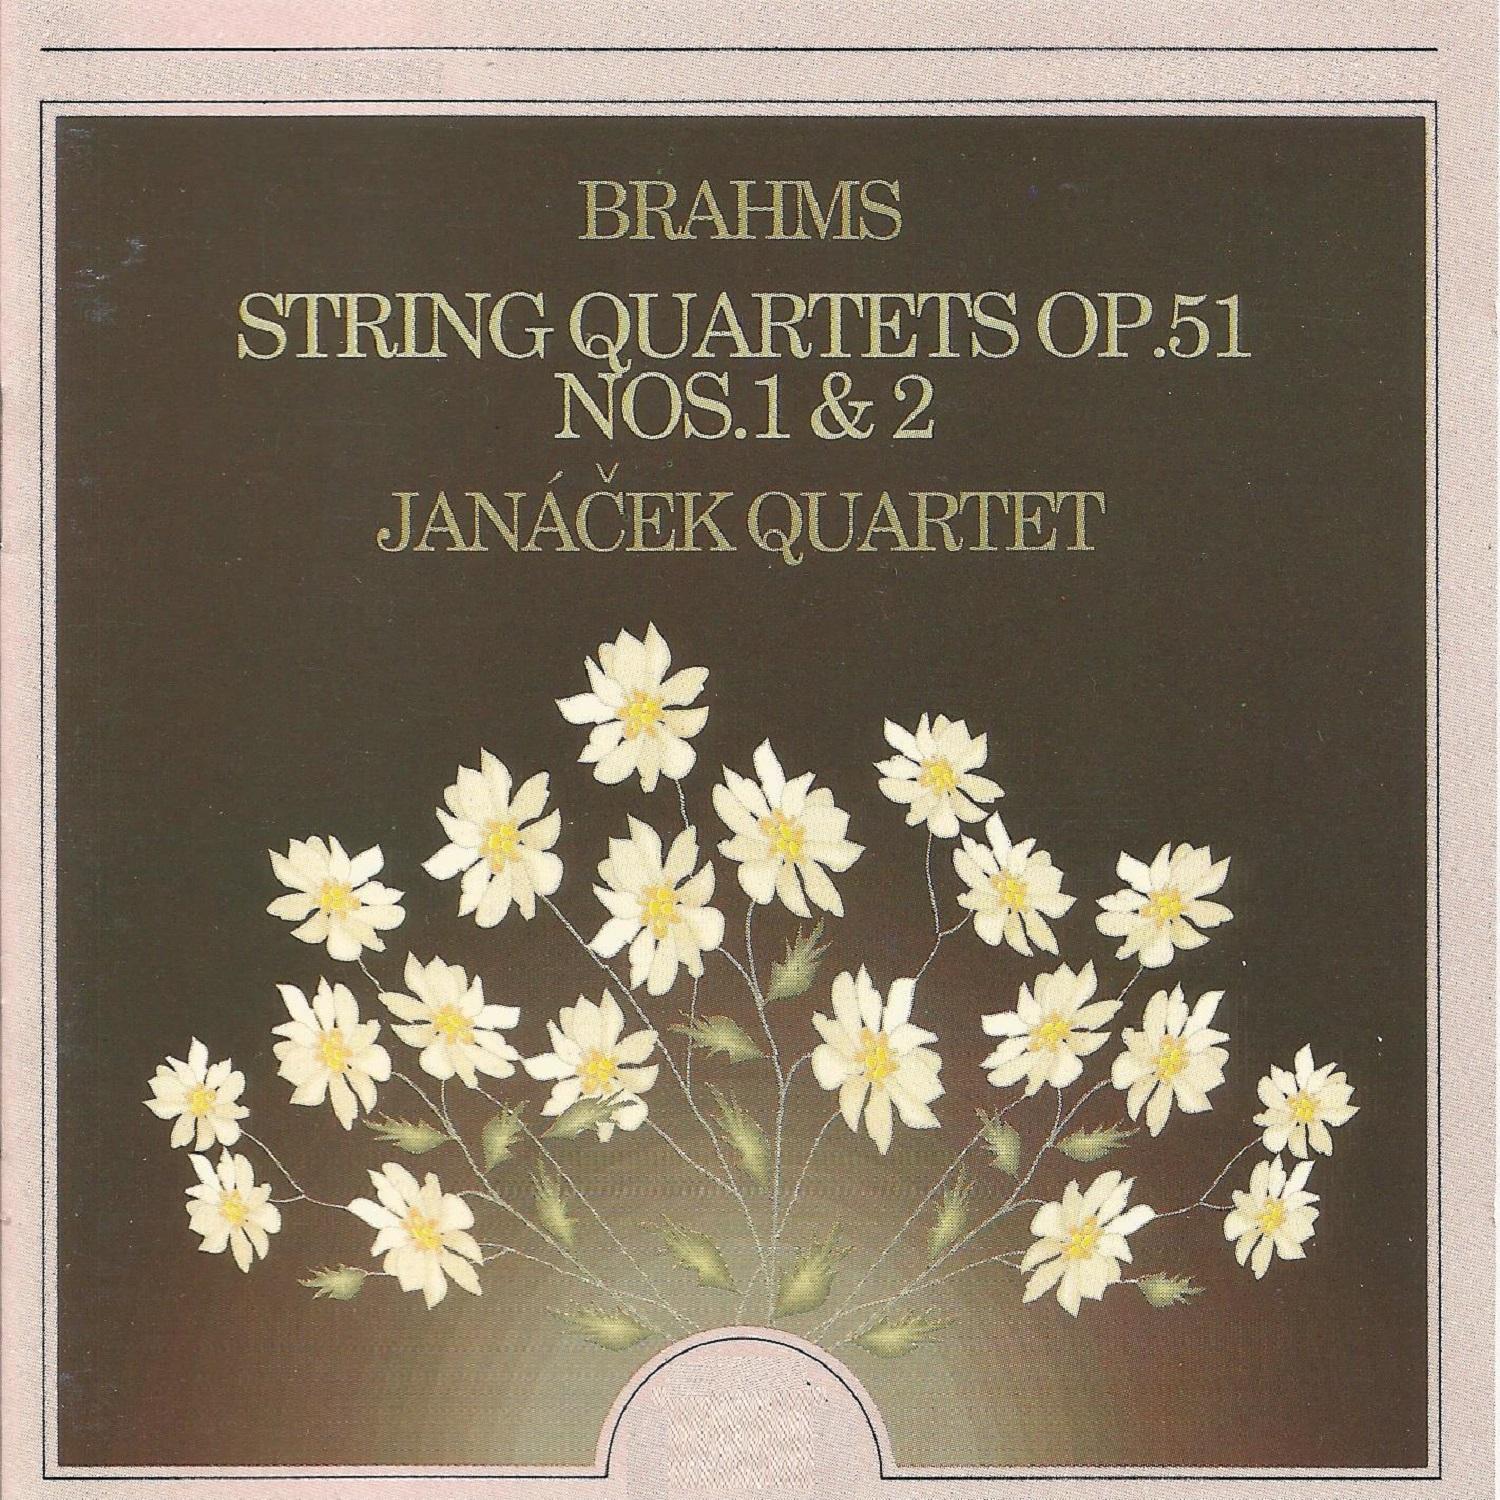 String Quartet No. 2 in A Minor, Op. 51 No. 2: III. Quasi minuetto, moderato